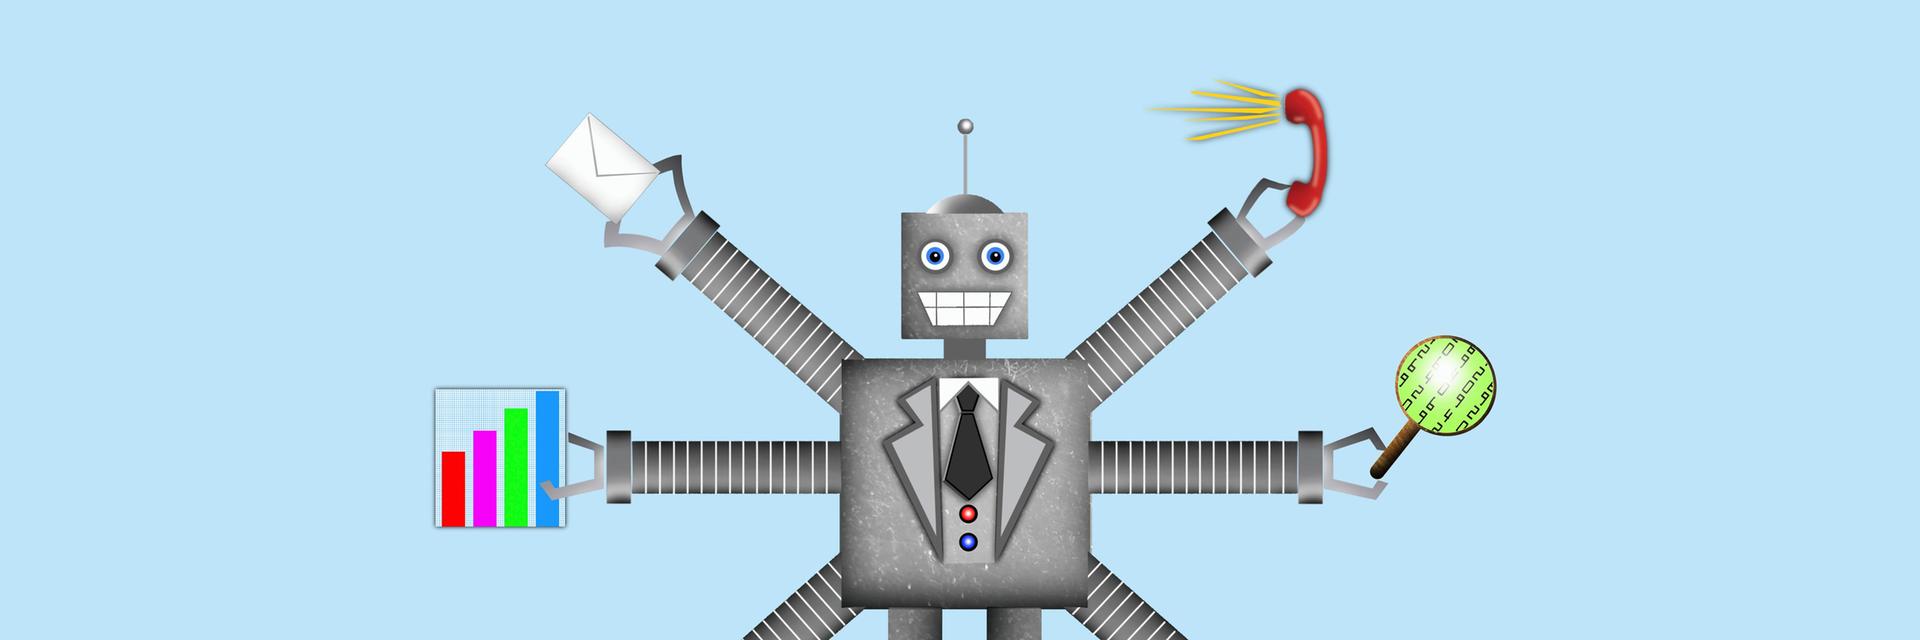 Grafik eines Roboters mit mehreren Armen, die verschiedene Arbeitsutensilien halten